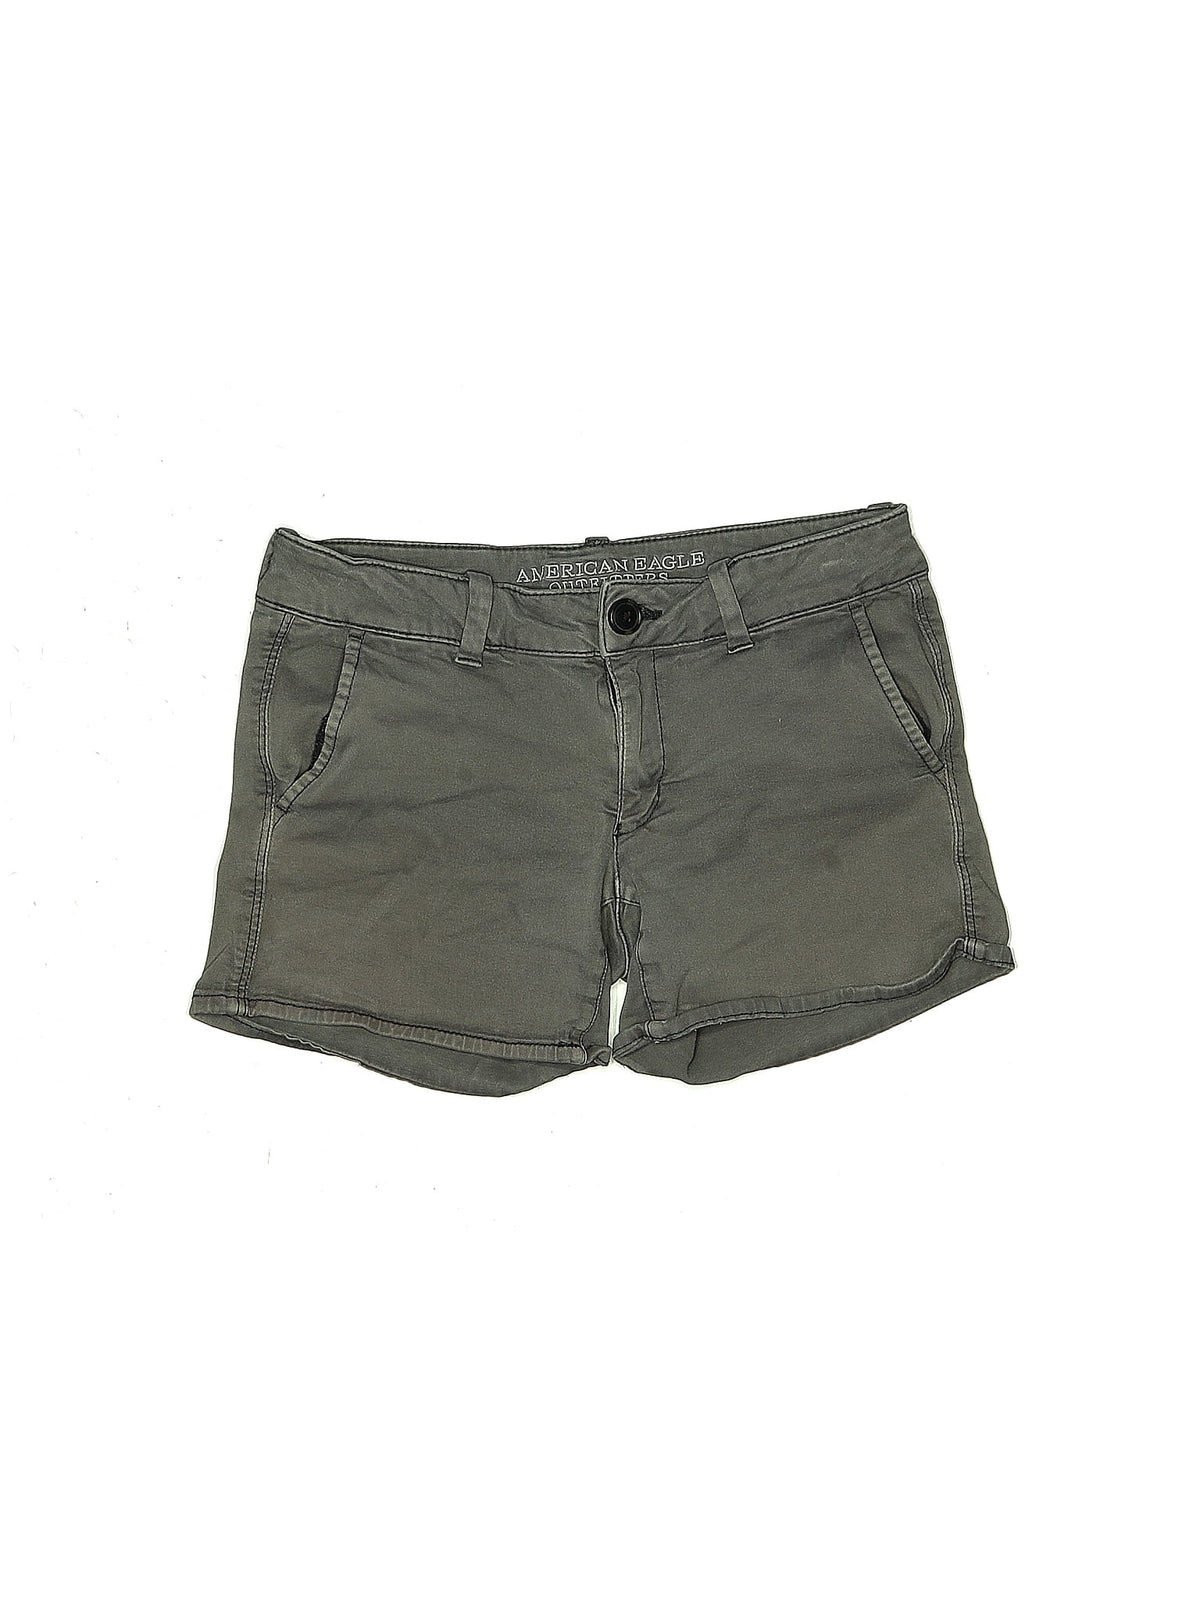 Khaki Shorts size - 4